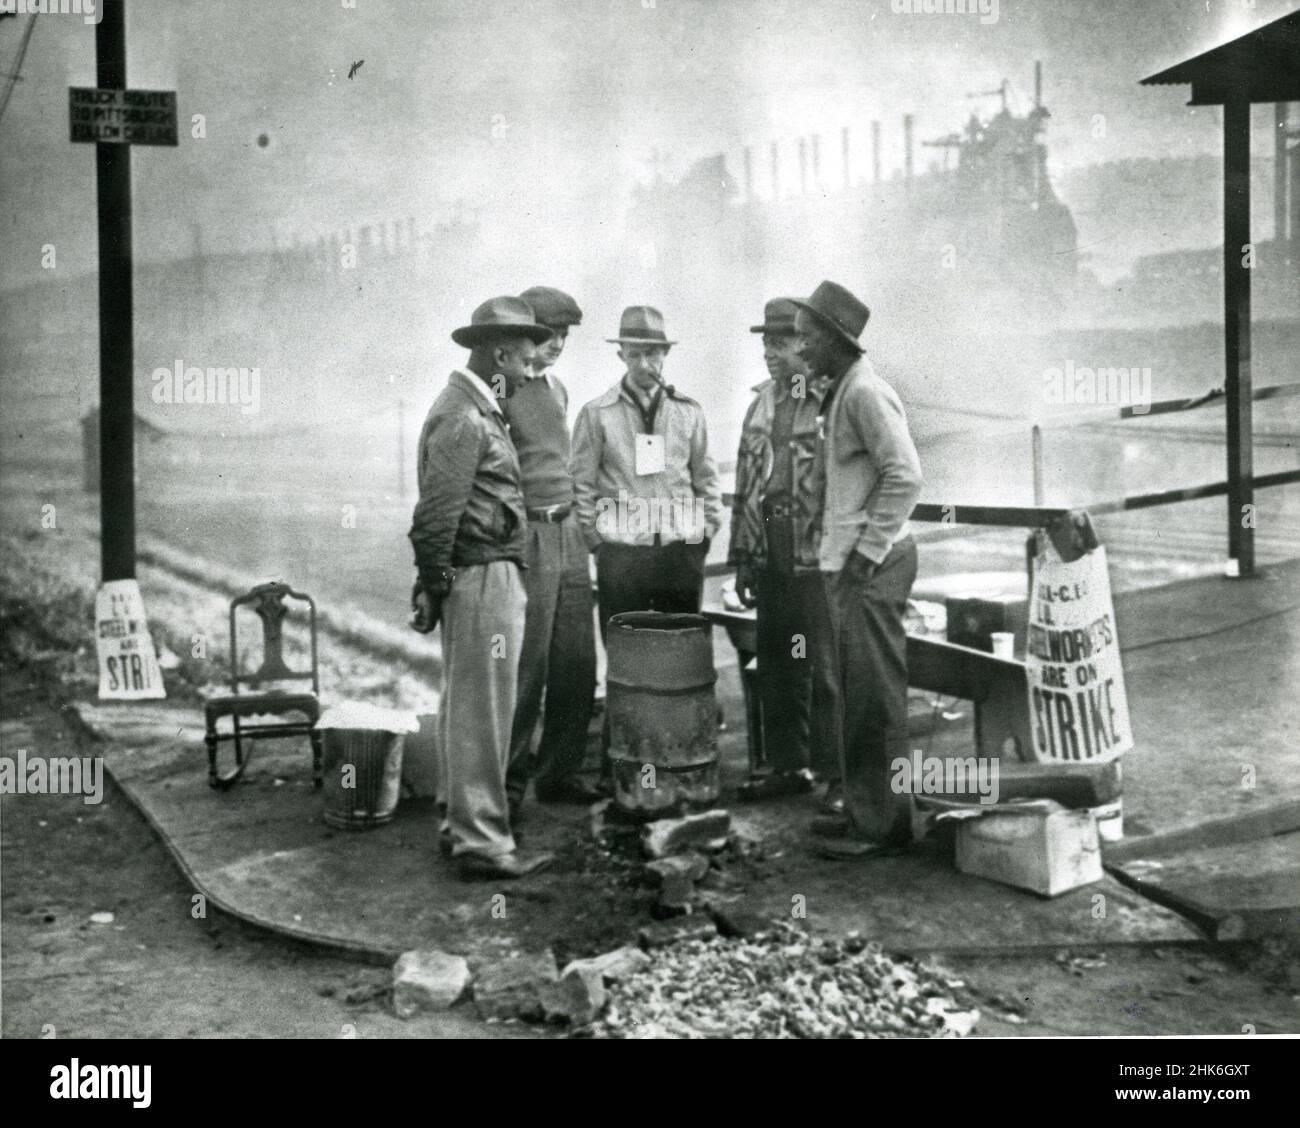 1949. Oktober, Duquesne, Pennsylvania - streikende Stahlarbeiter versammeln sich um ein kleines Feuer in einer alten Öltrommel, während sie sich die Zeit nehmen, die Bessemer-Fabrik der Carnegie-Illinois Co. Zu pickern.die Männer haben eine Bank, einen Schaukelstuhl und ein Radio an einer Straßenecke für ihre Mahnwache aufgestellt. Die Bessemer-Öfen im Hintergrund sind von Nebel umhüllt. Stockfoto